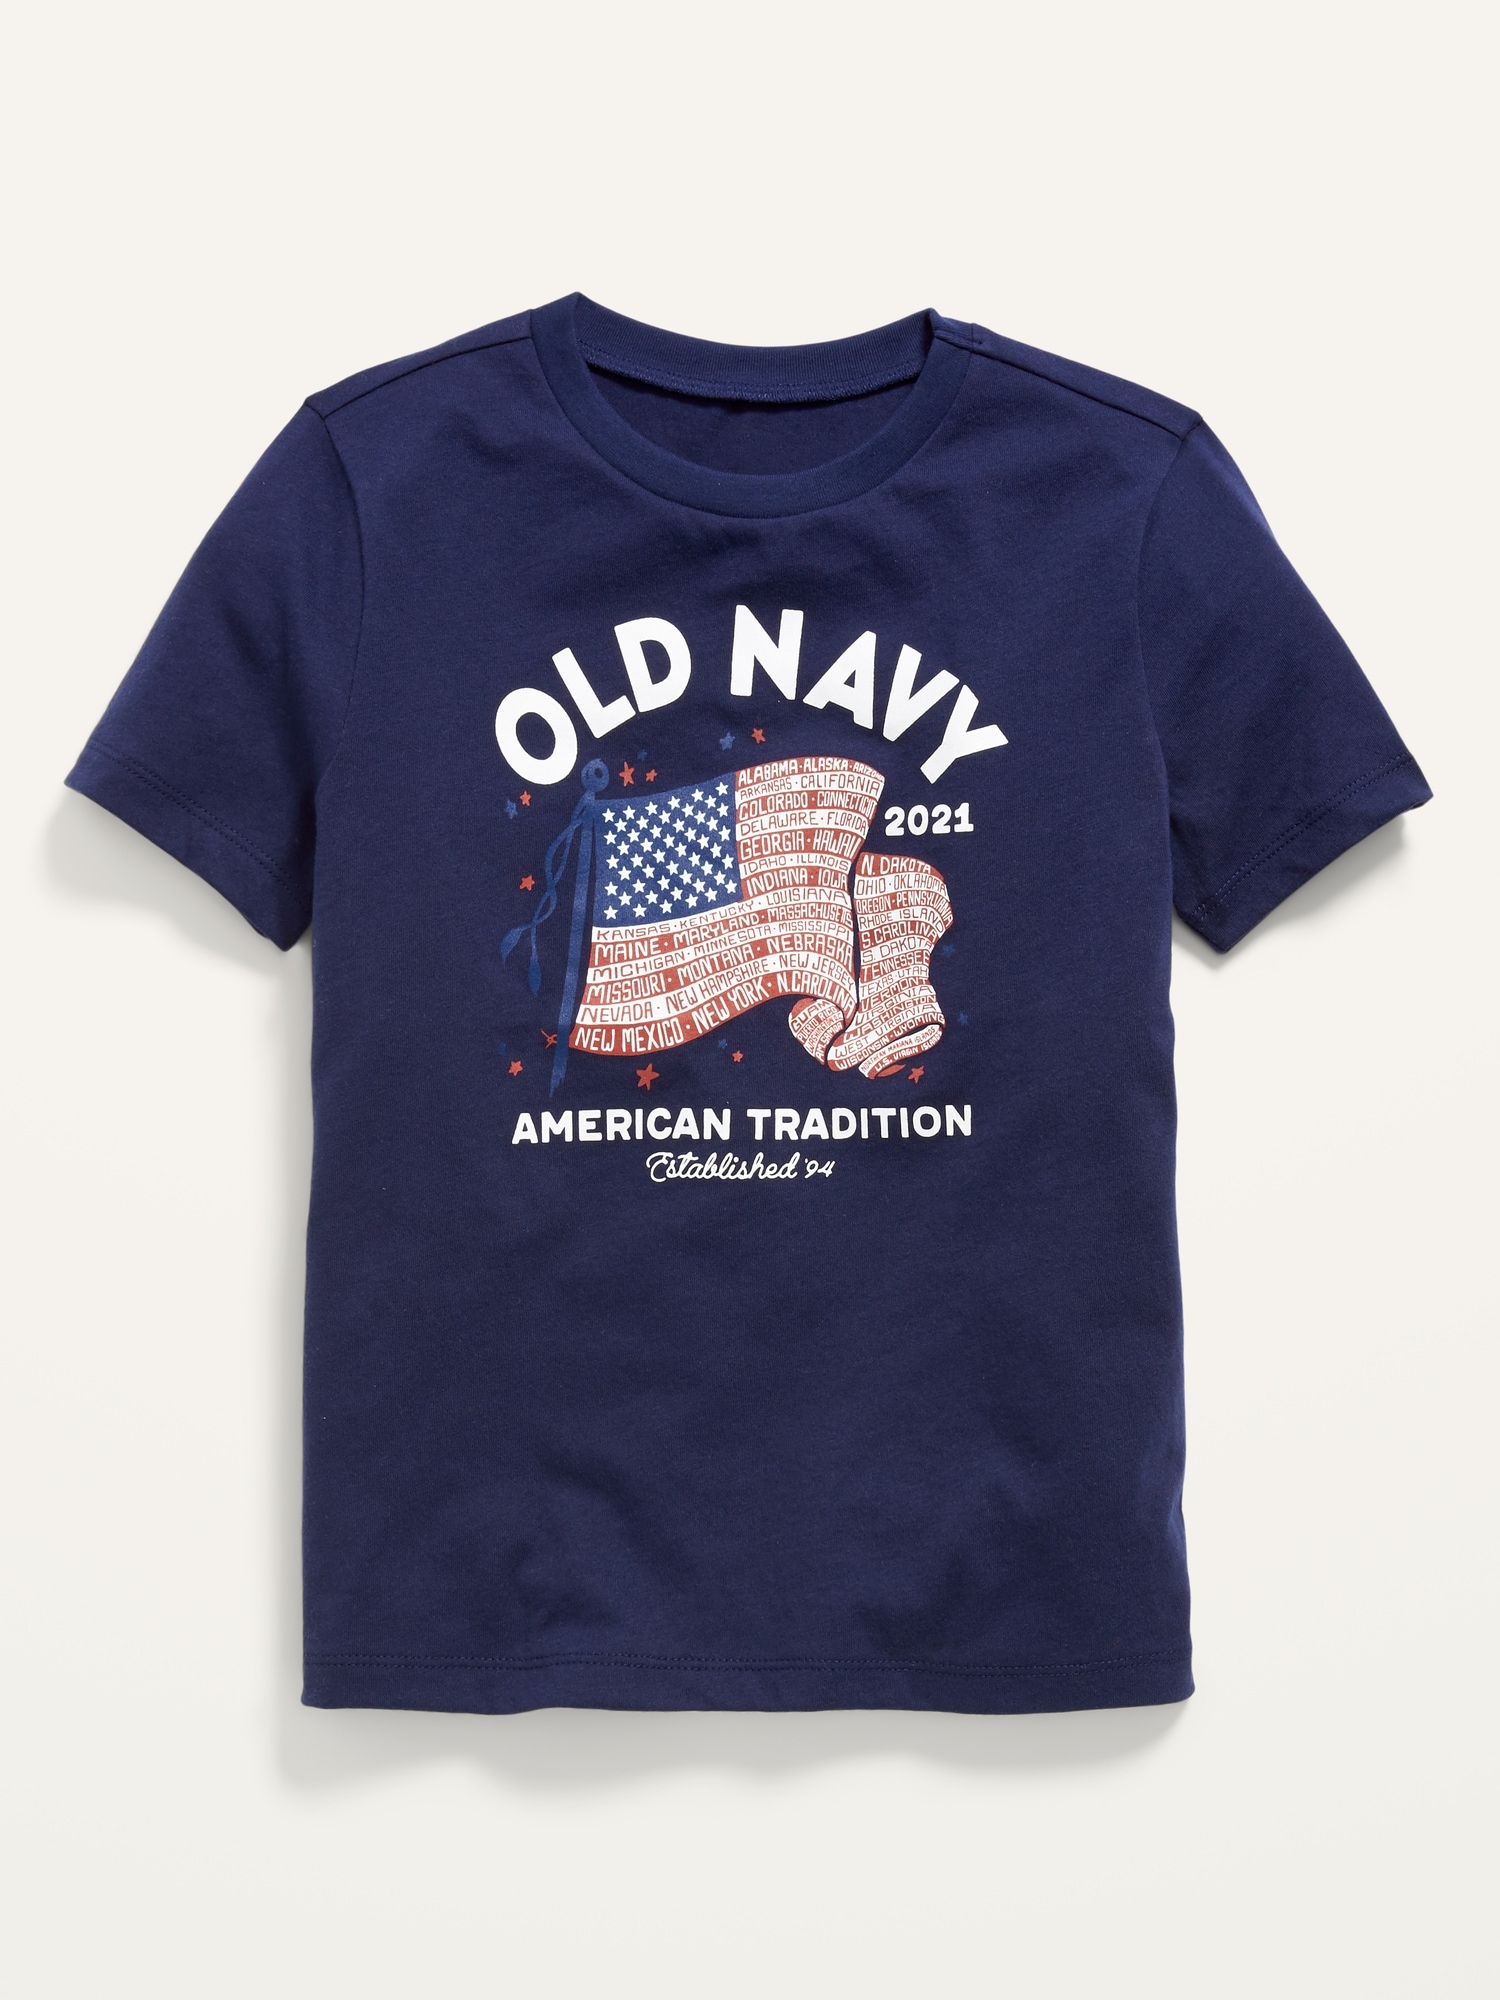 Old Navy, Shirts, Old Navy Flag Shirt